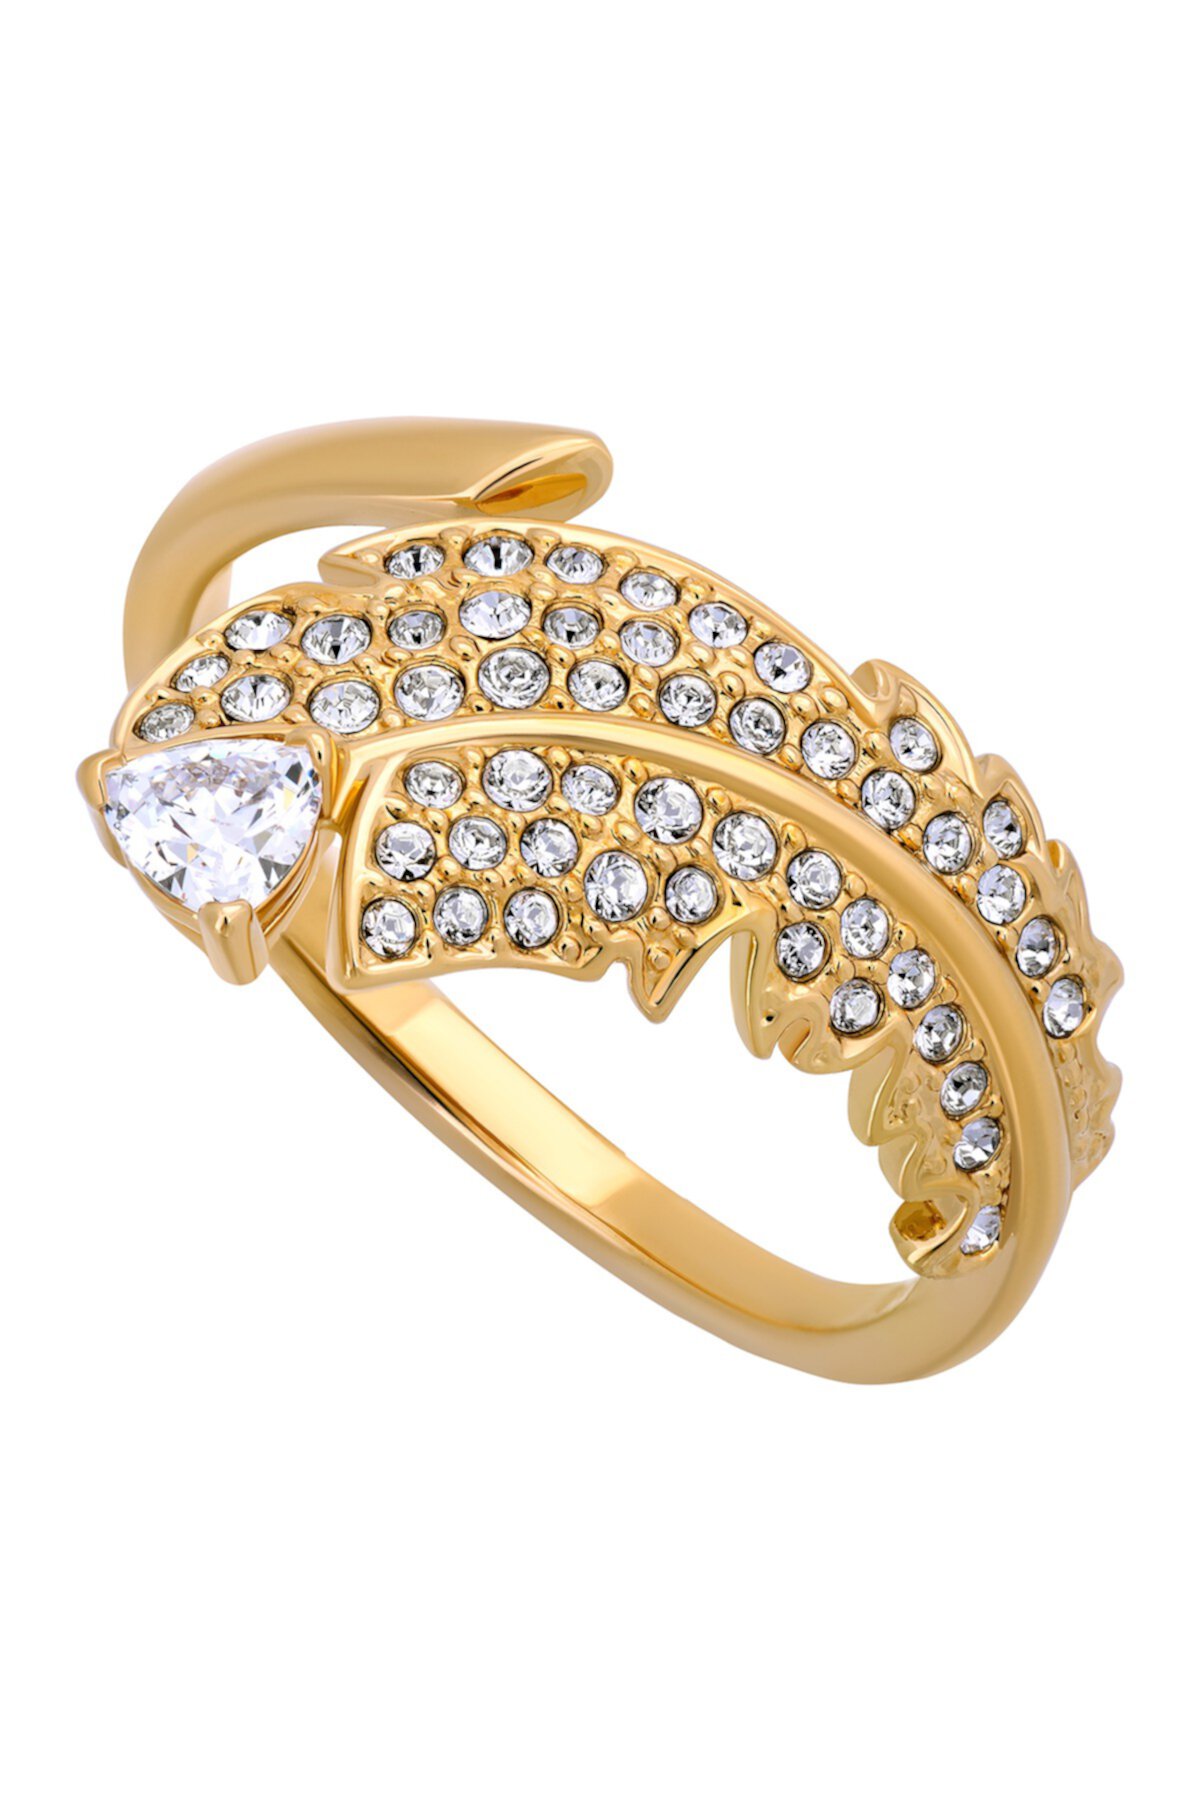 Красивое позолоченное кольцо с кристаллами Swarovski и паве из 23 карат - Размер 8 Swarovski